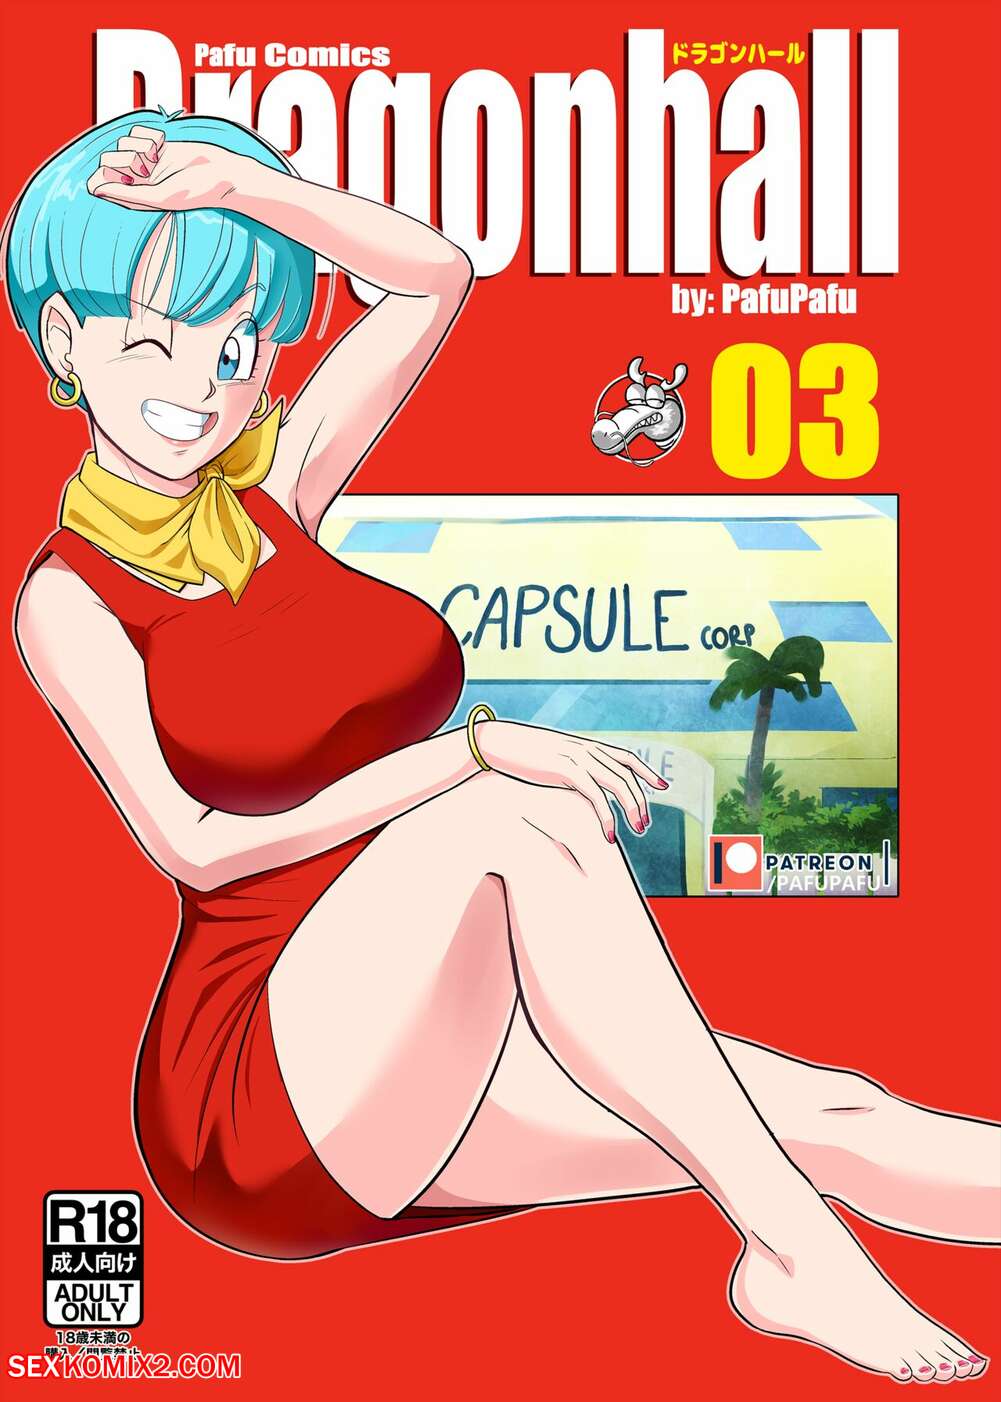 1001px x 1402px - âœ…ï¸ Porn comic Gohan vs Bulma. Dragon Ball Z. PafuPafu Sex comic beauty MILF  was | Porn comics in English for adults only | sexkomix2.com